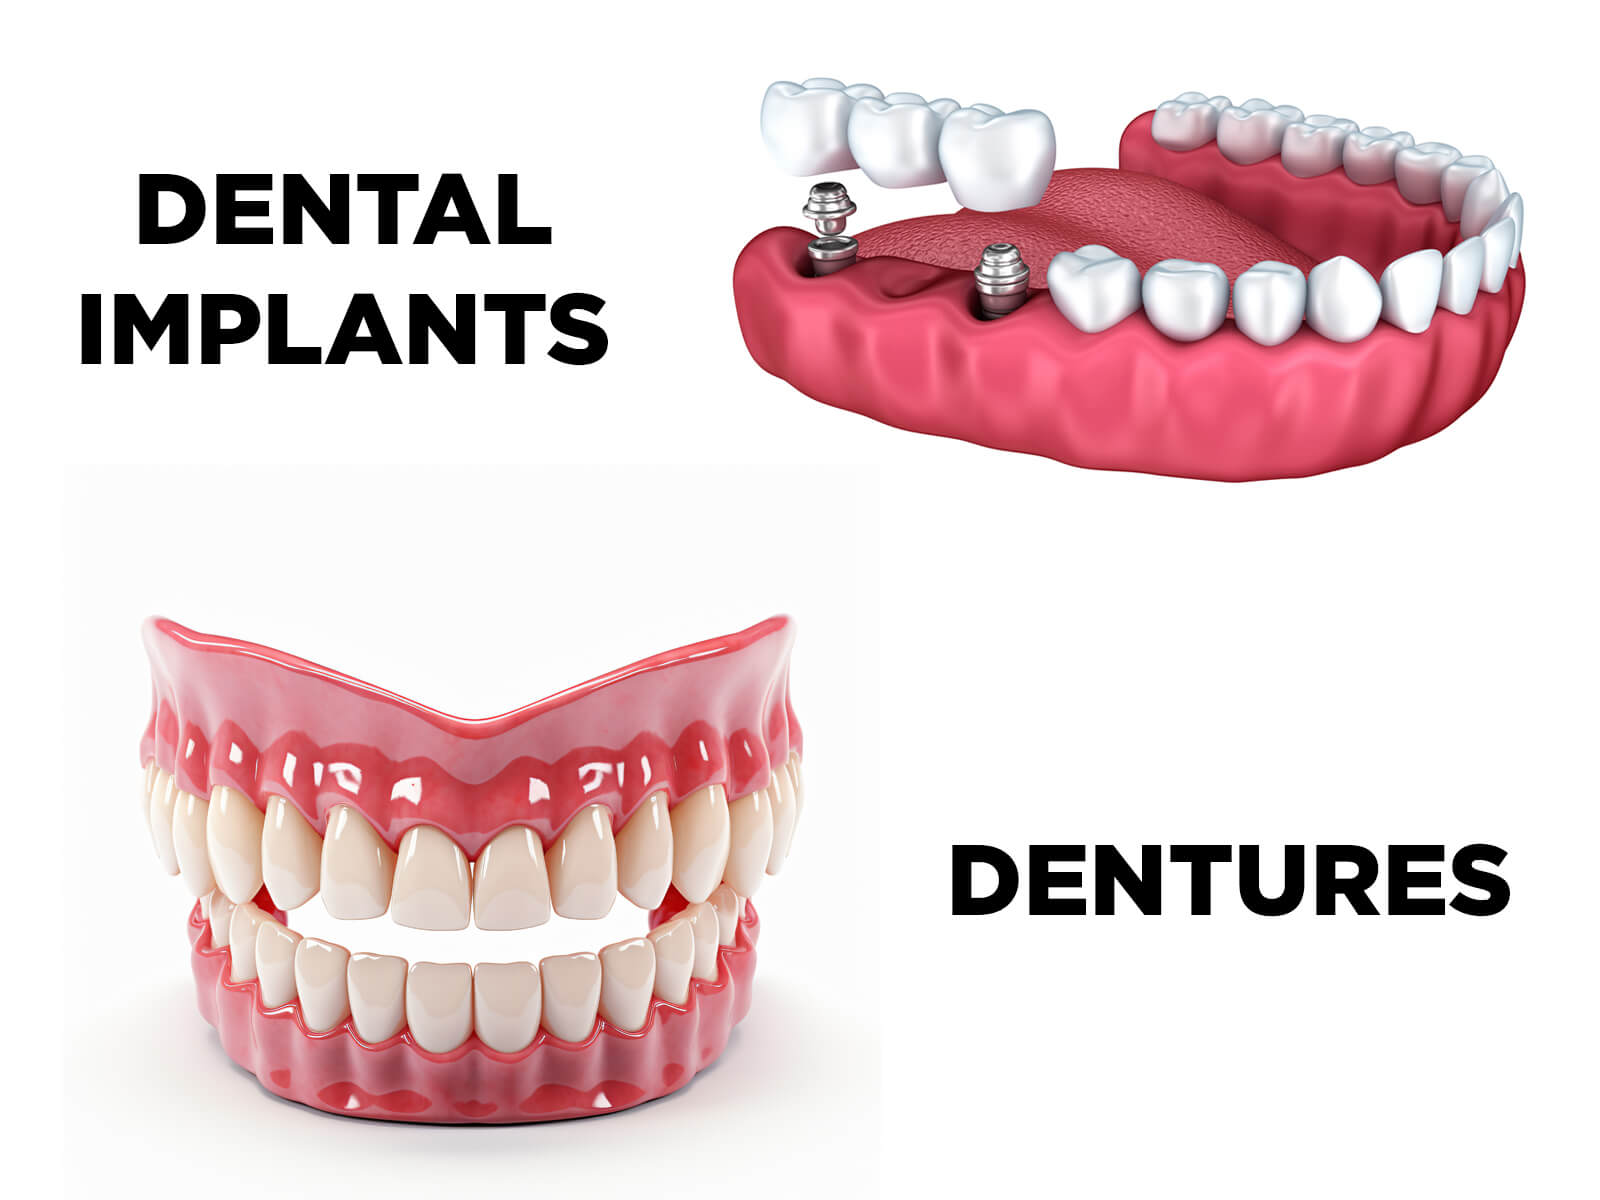 Should I Get Dentures or Dental Implants